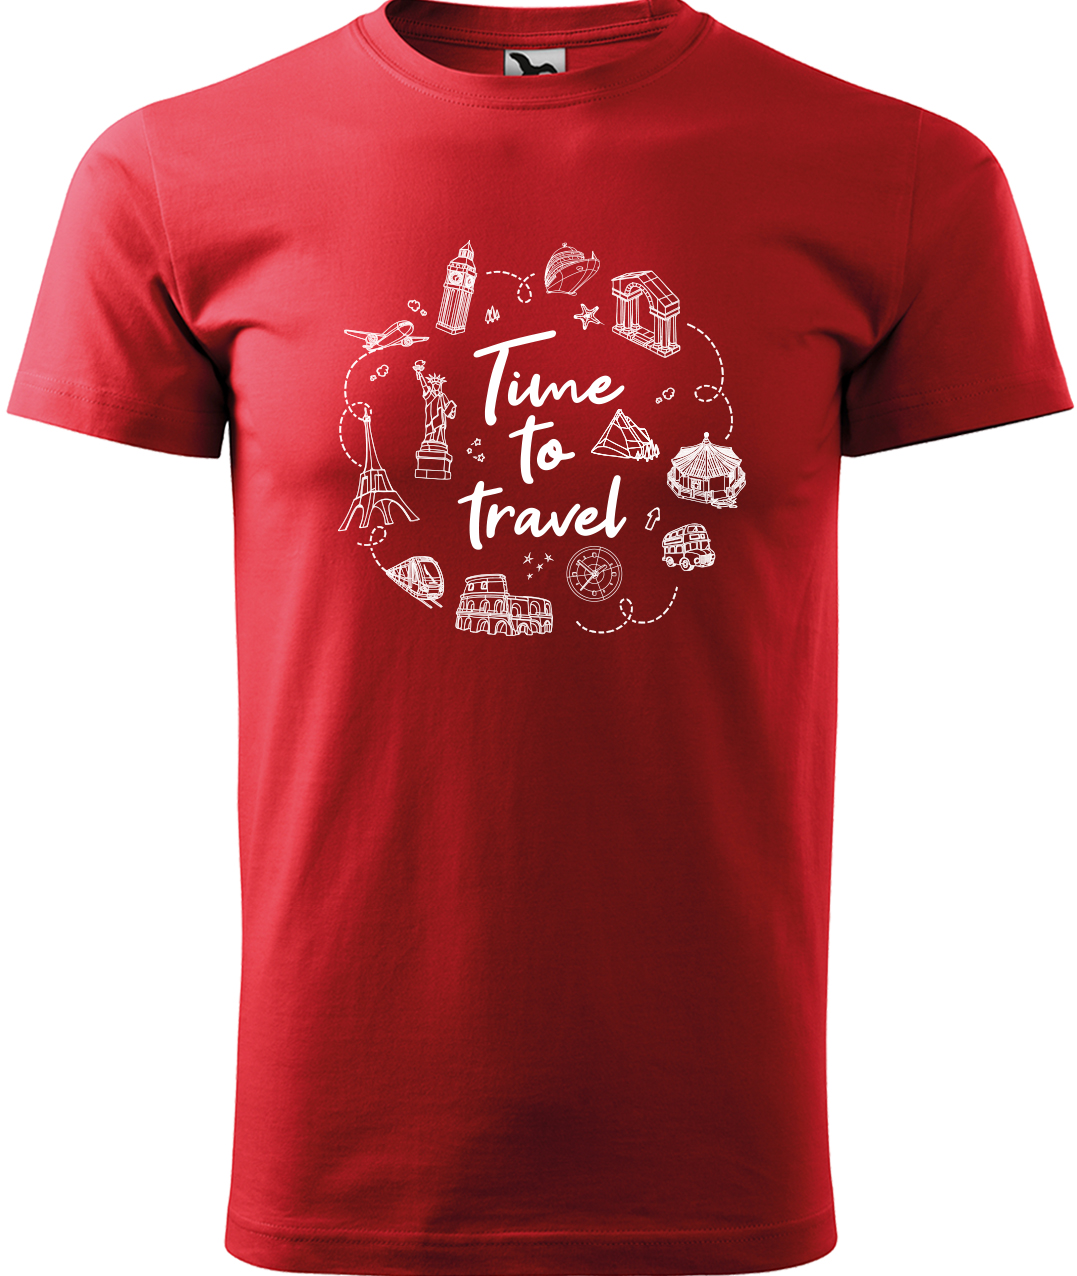 Pánské cestovatelské tričko - Time to travel Velikost: M, Barva: Červená (07), Střih: pánský